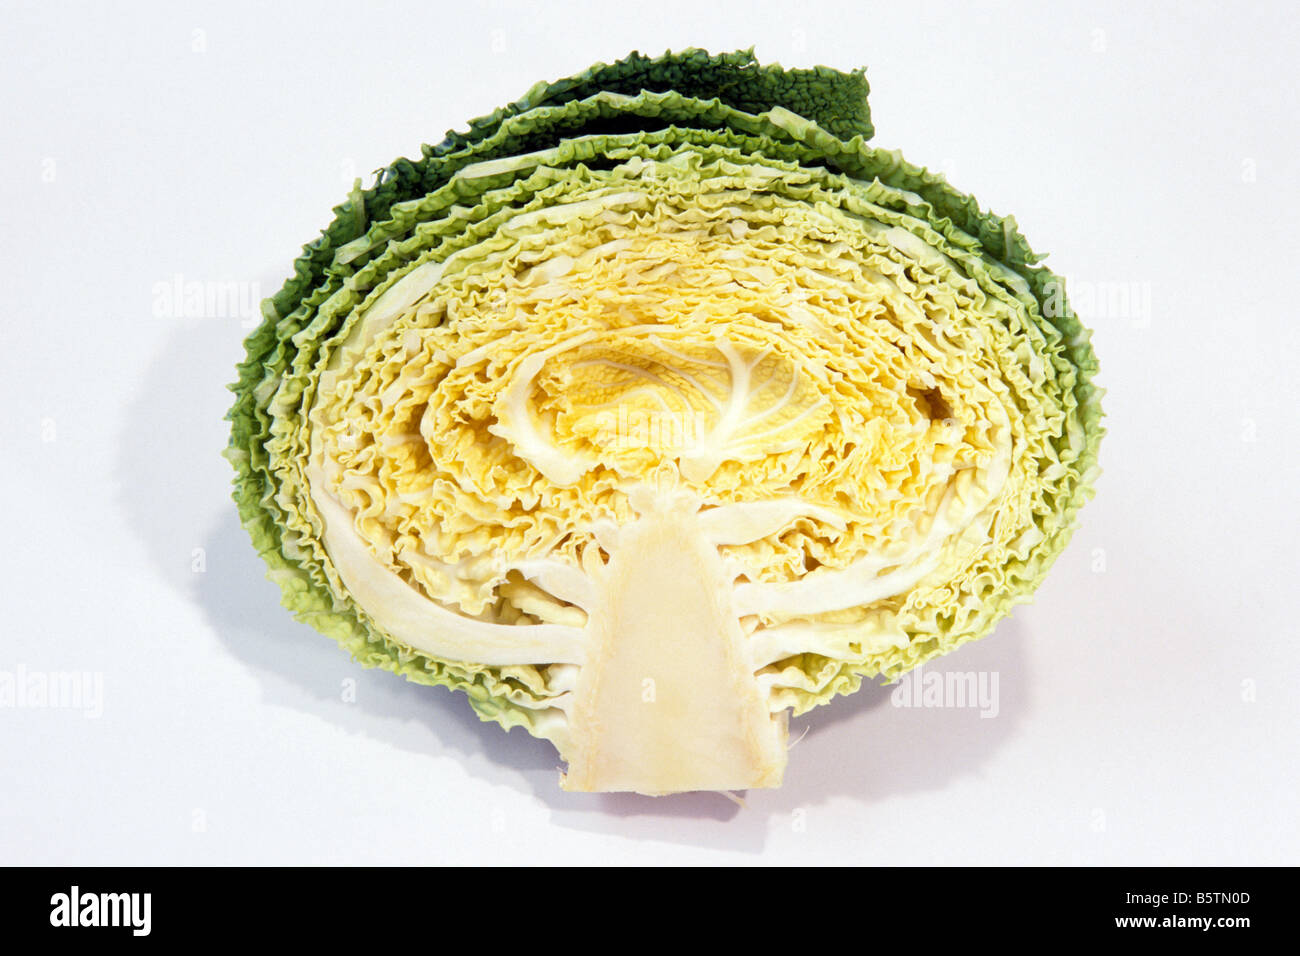 Savoy cabbage (Brassica oleracea convar. capitata var. sabauda), cut in half, studio picture Stock Photo